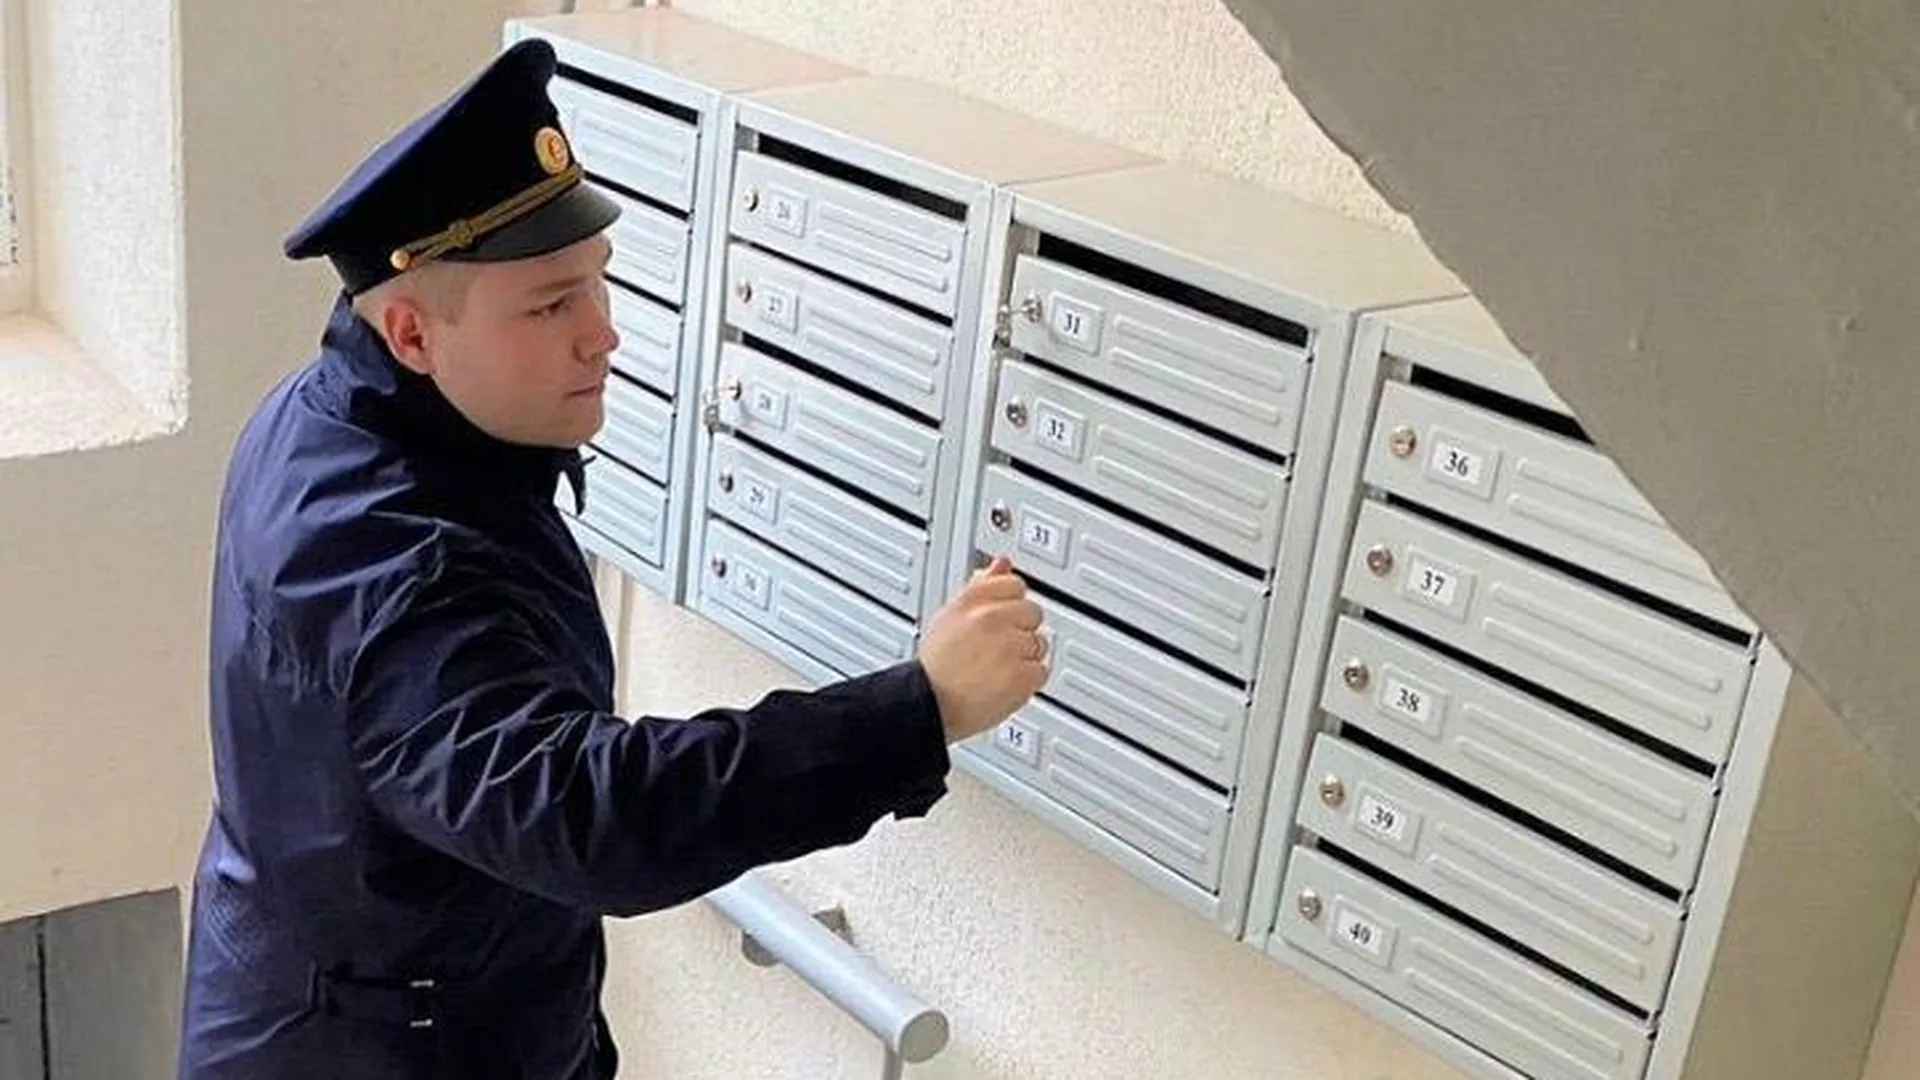 УК Подольска отремонтировали почтовые ящики в подъездах по заявкам жителей